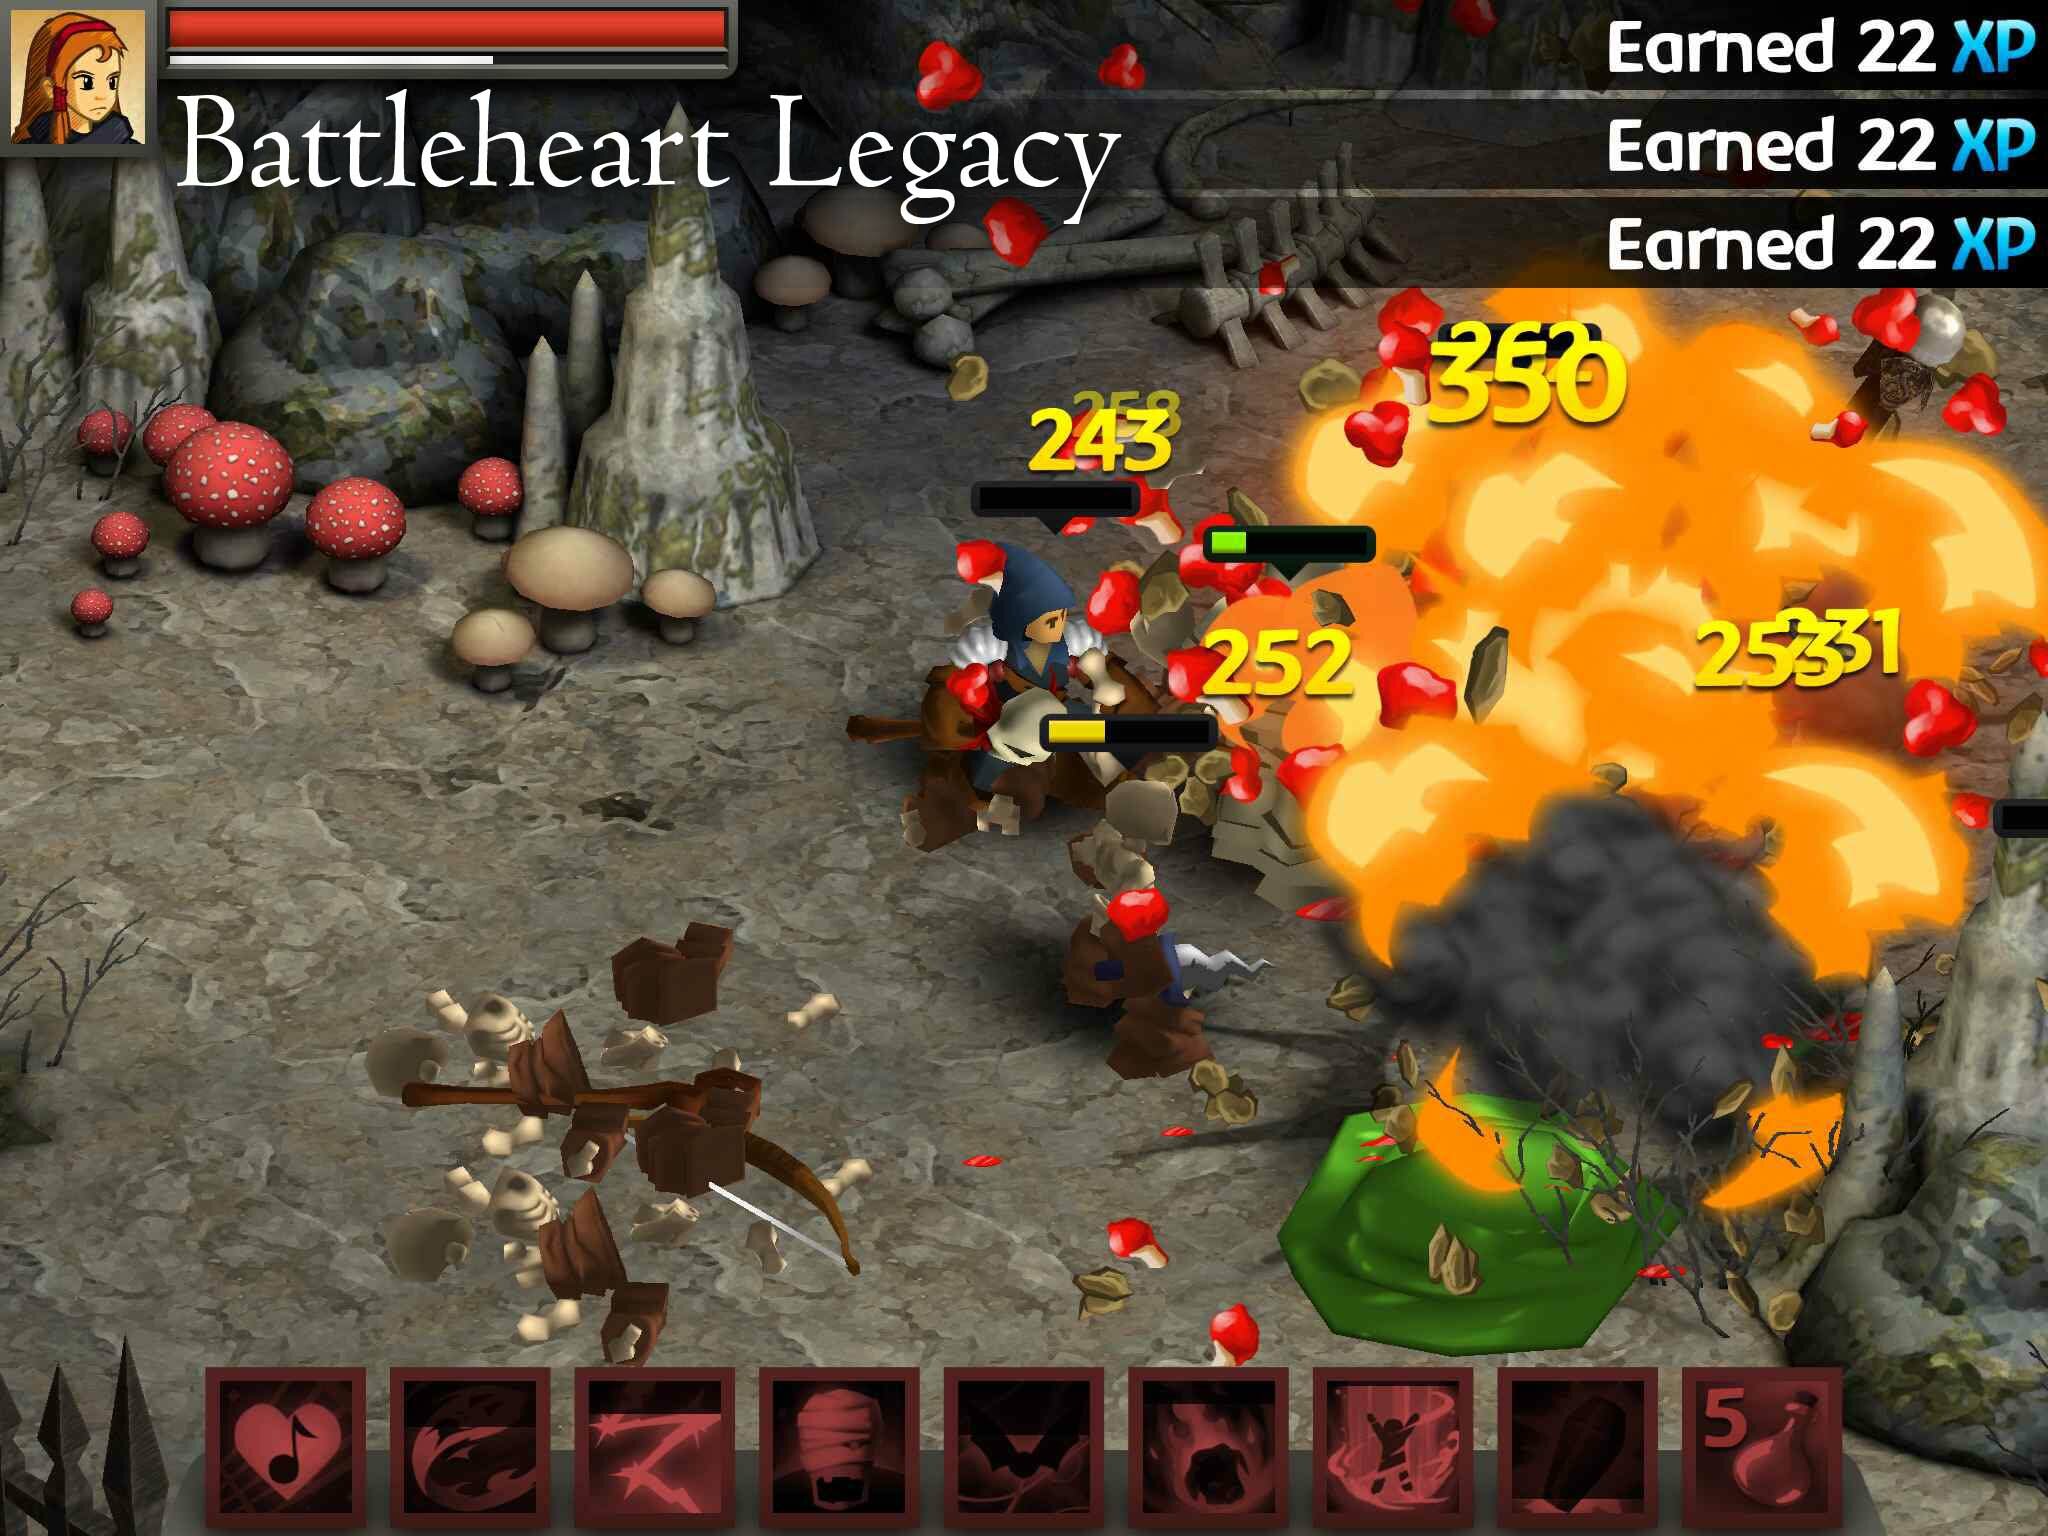 BattleHeart Legacy